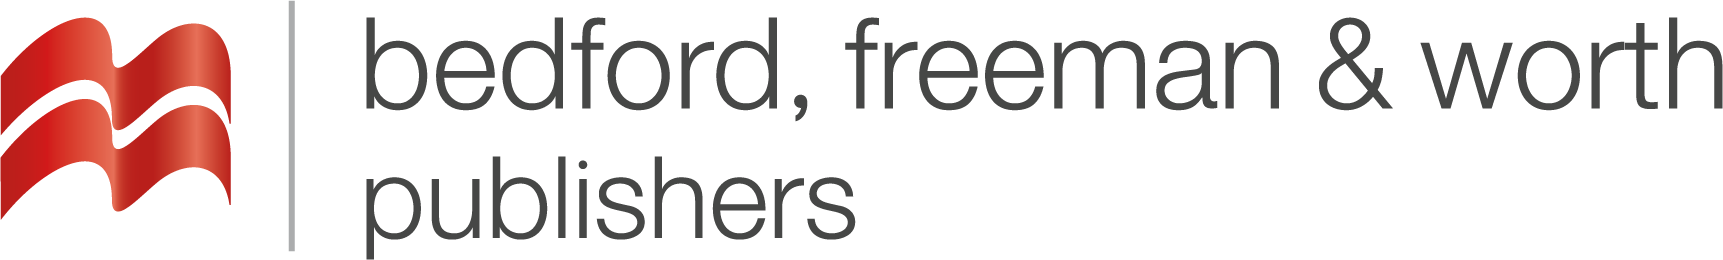 digital product logo image